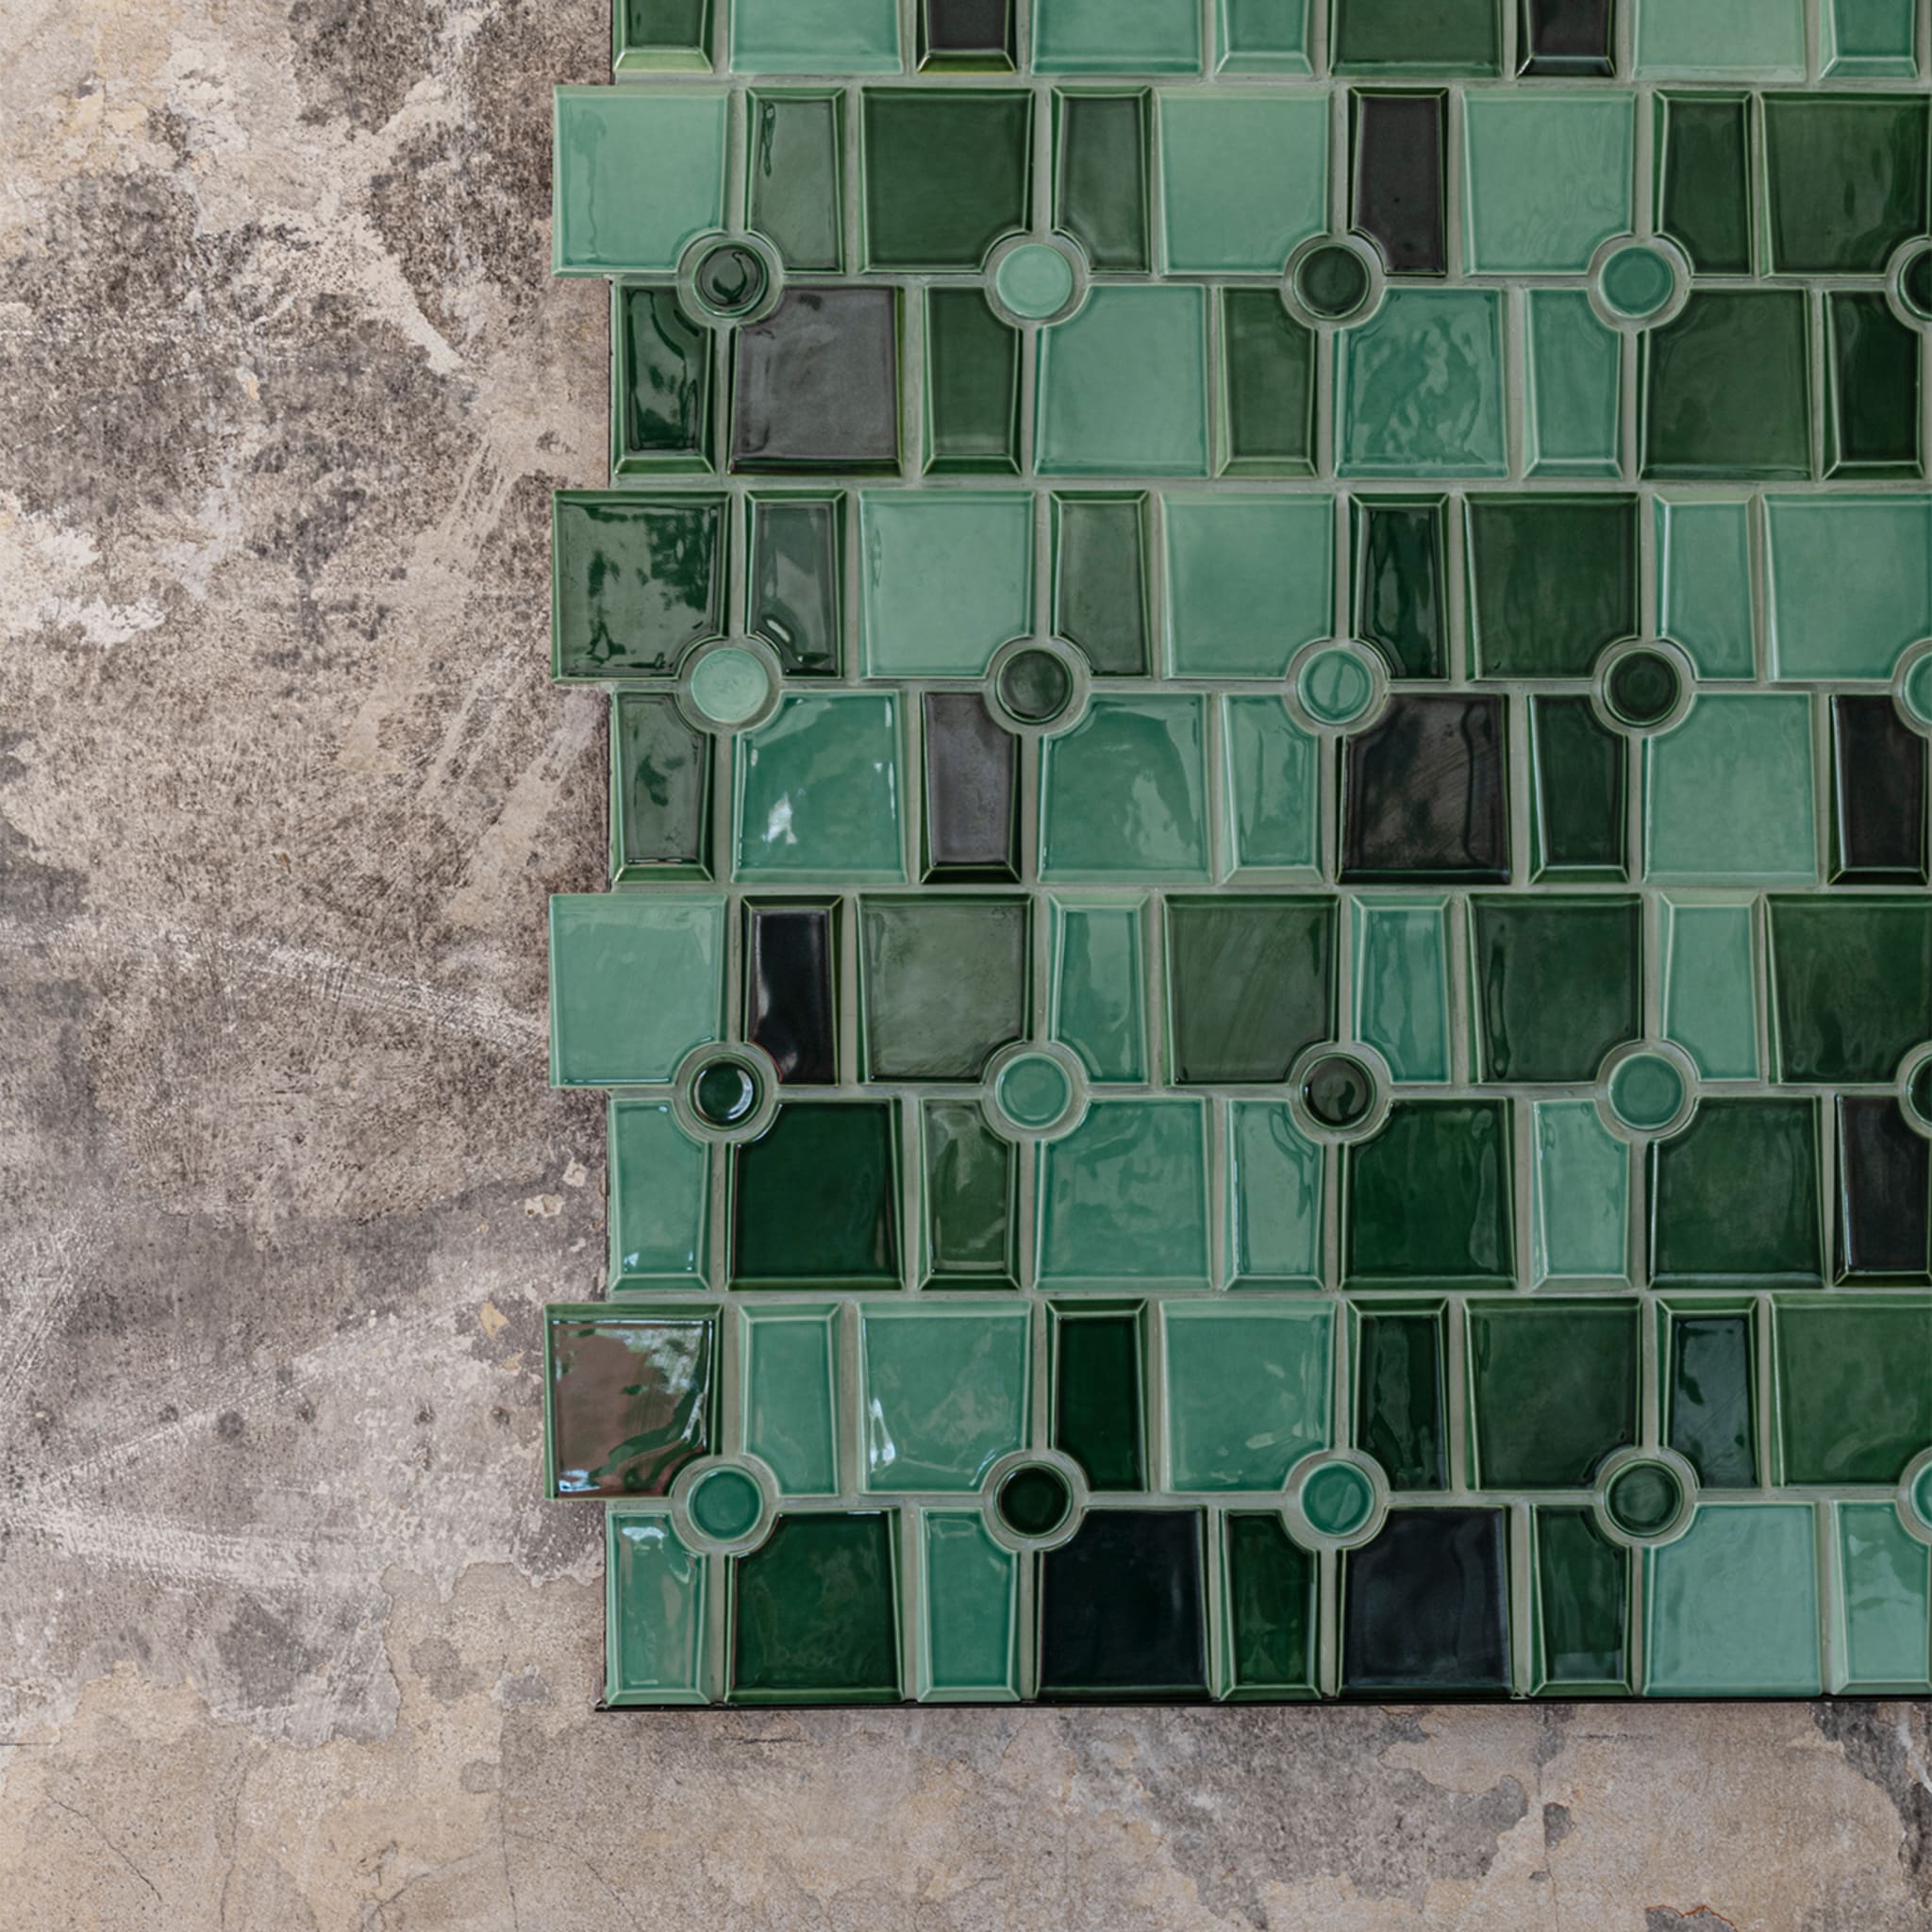 Maya 5 Green Mosaic Wall Covering by Giacomo Totti - Alternative view 1